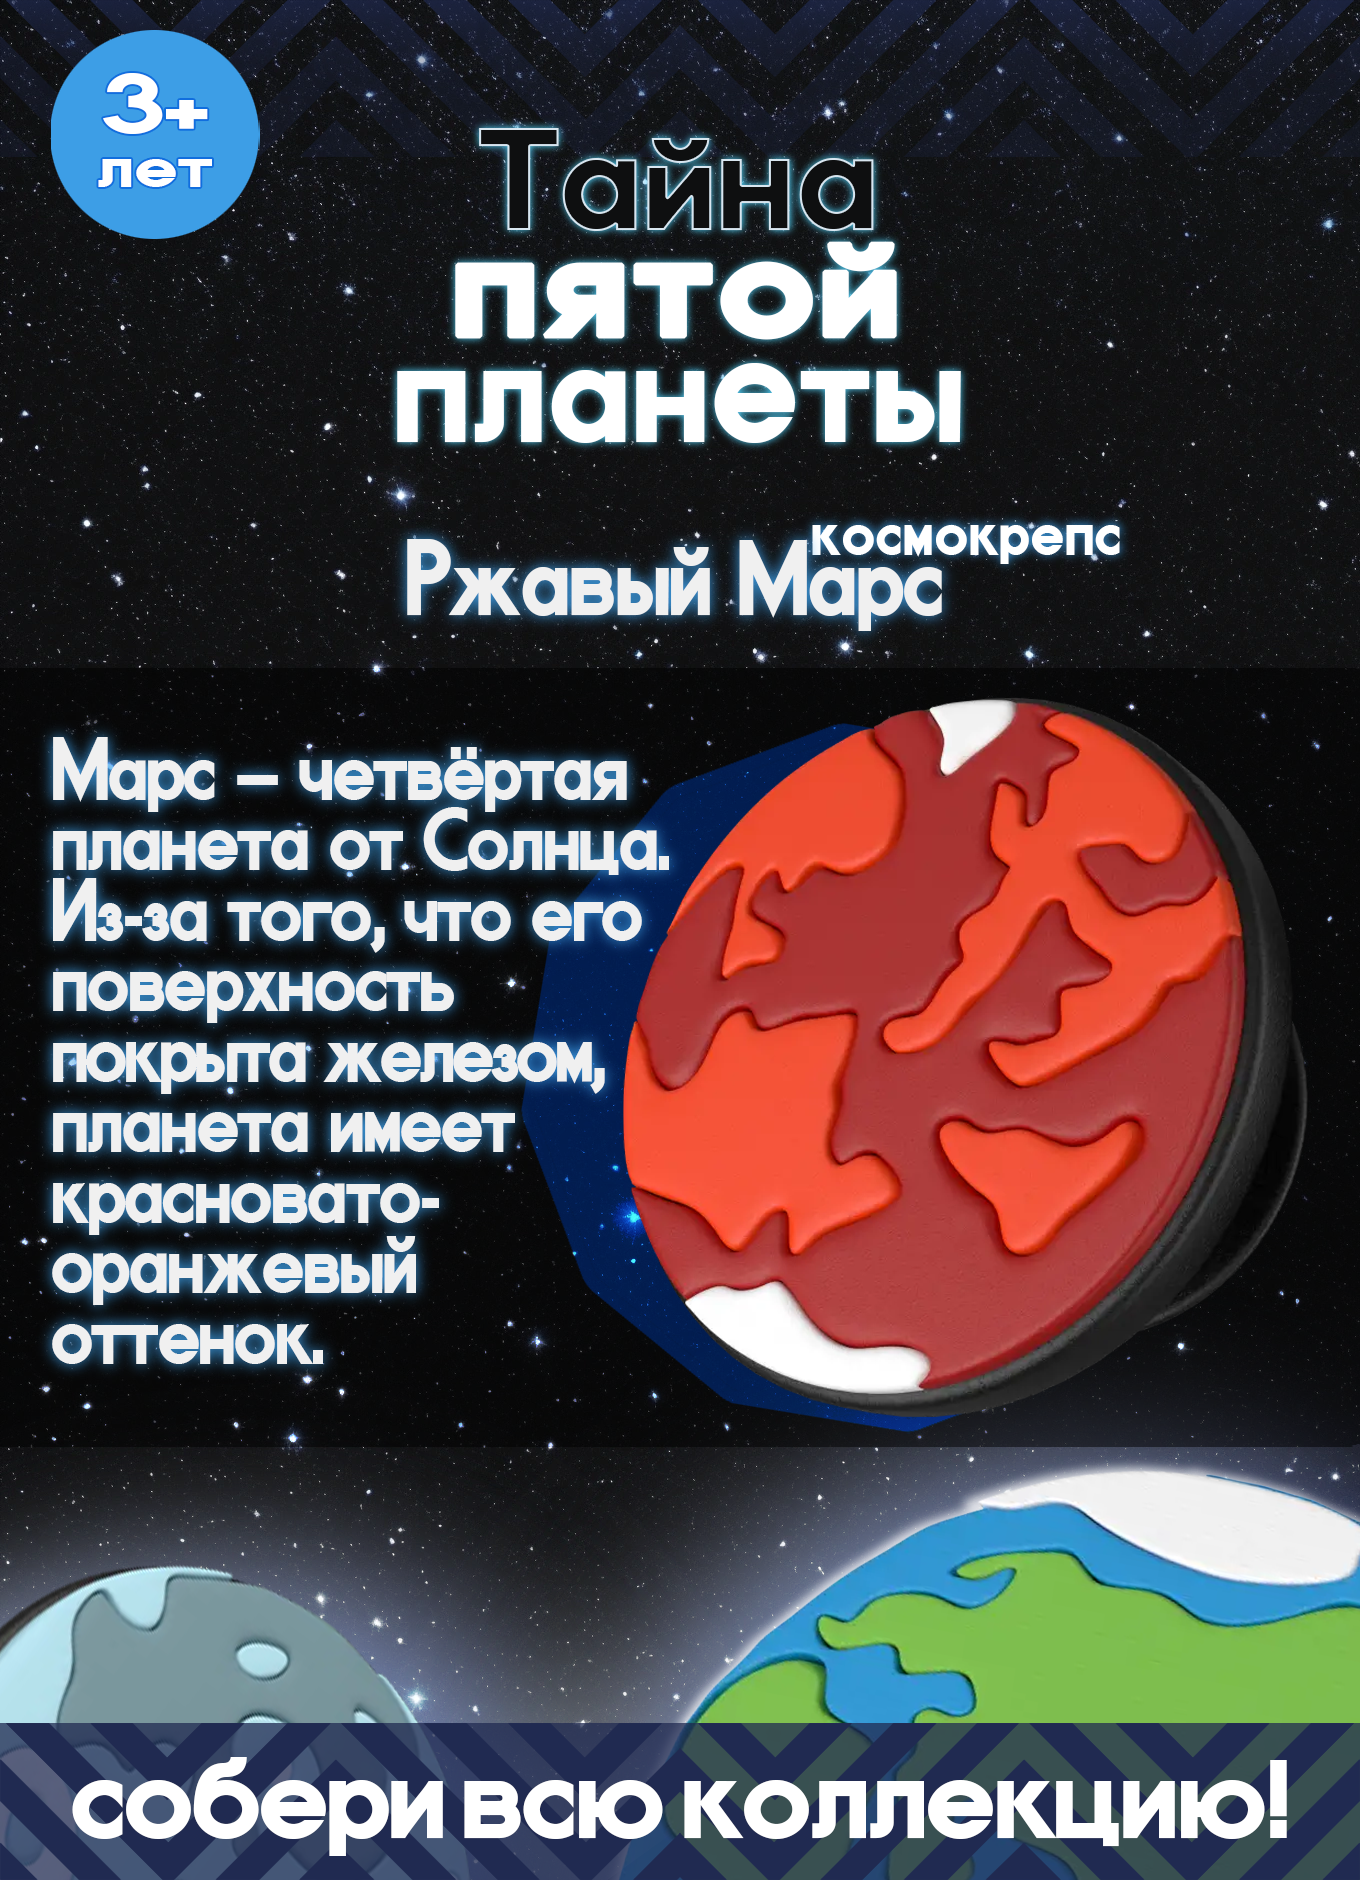 Пятерочка Тайна пятой планеты Космокрепс Ржавый Марс